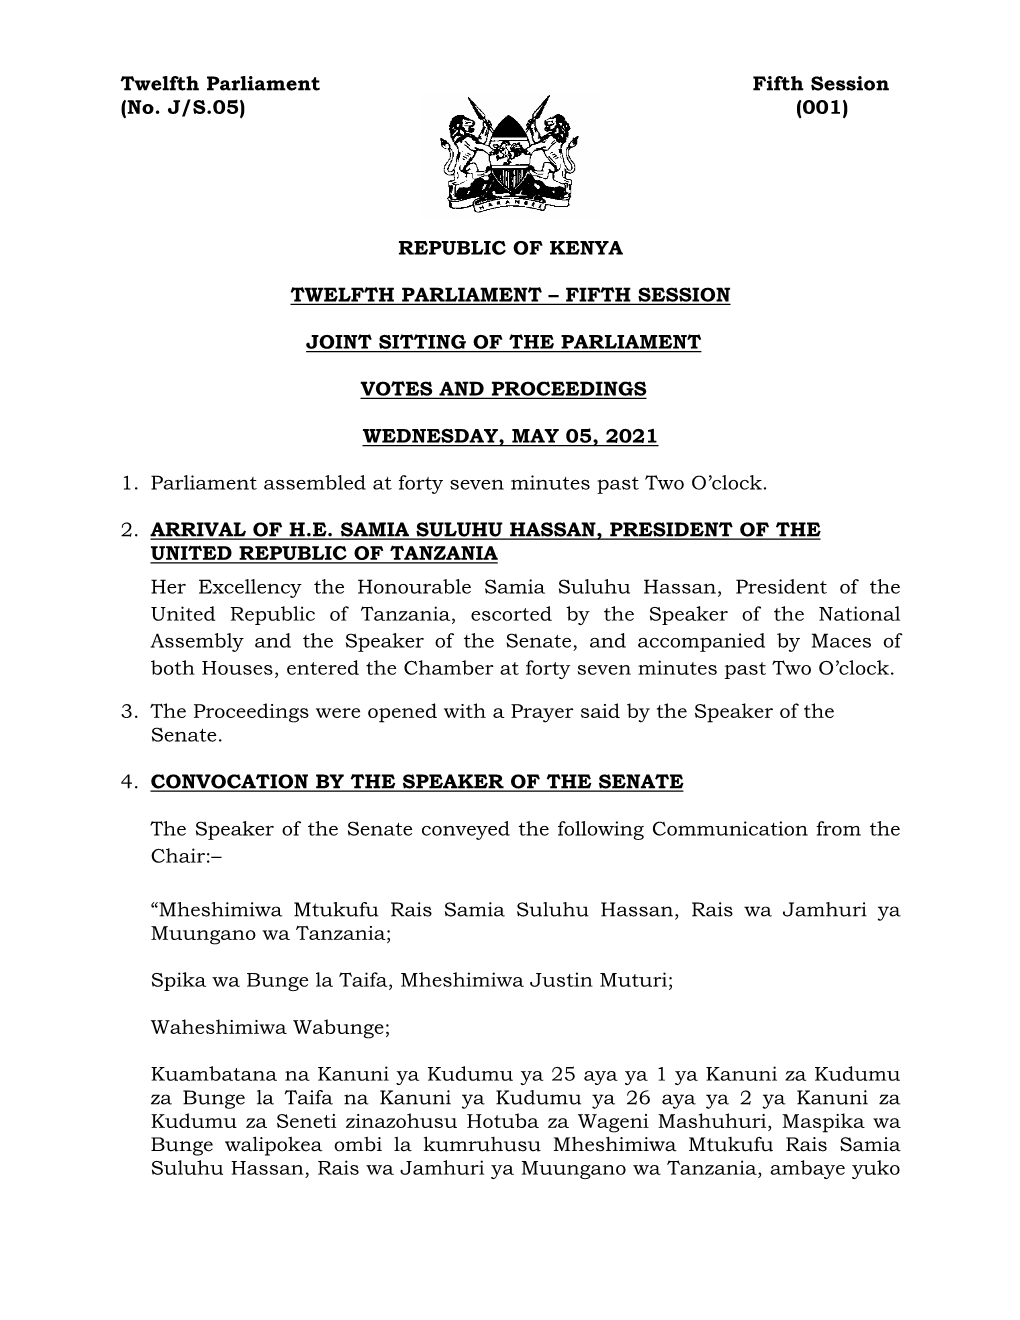 (No. J/S.05) (001) REPUBLIC of KENYA TWELFTH PARLIAMENT